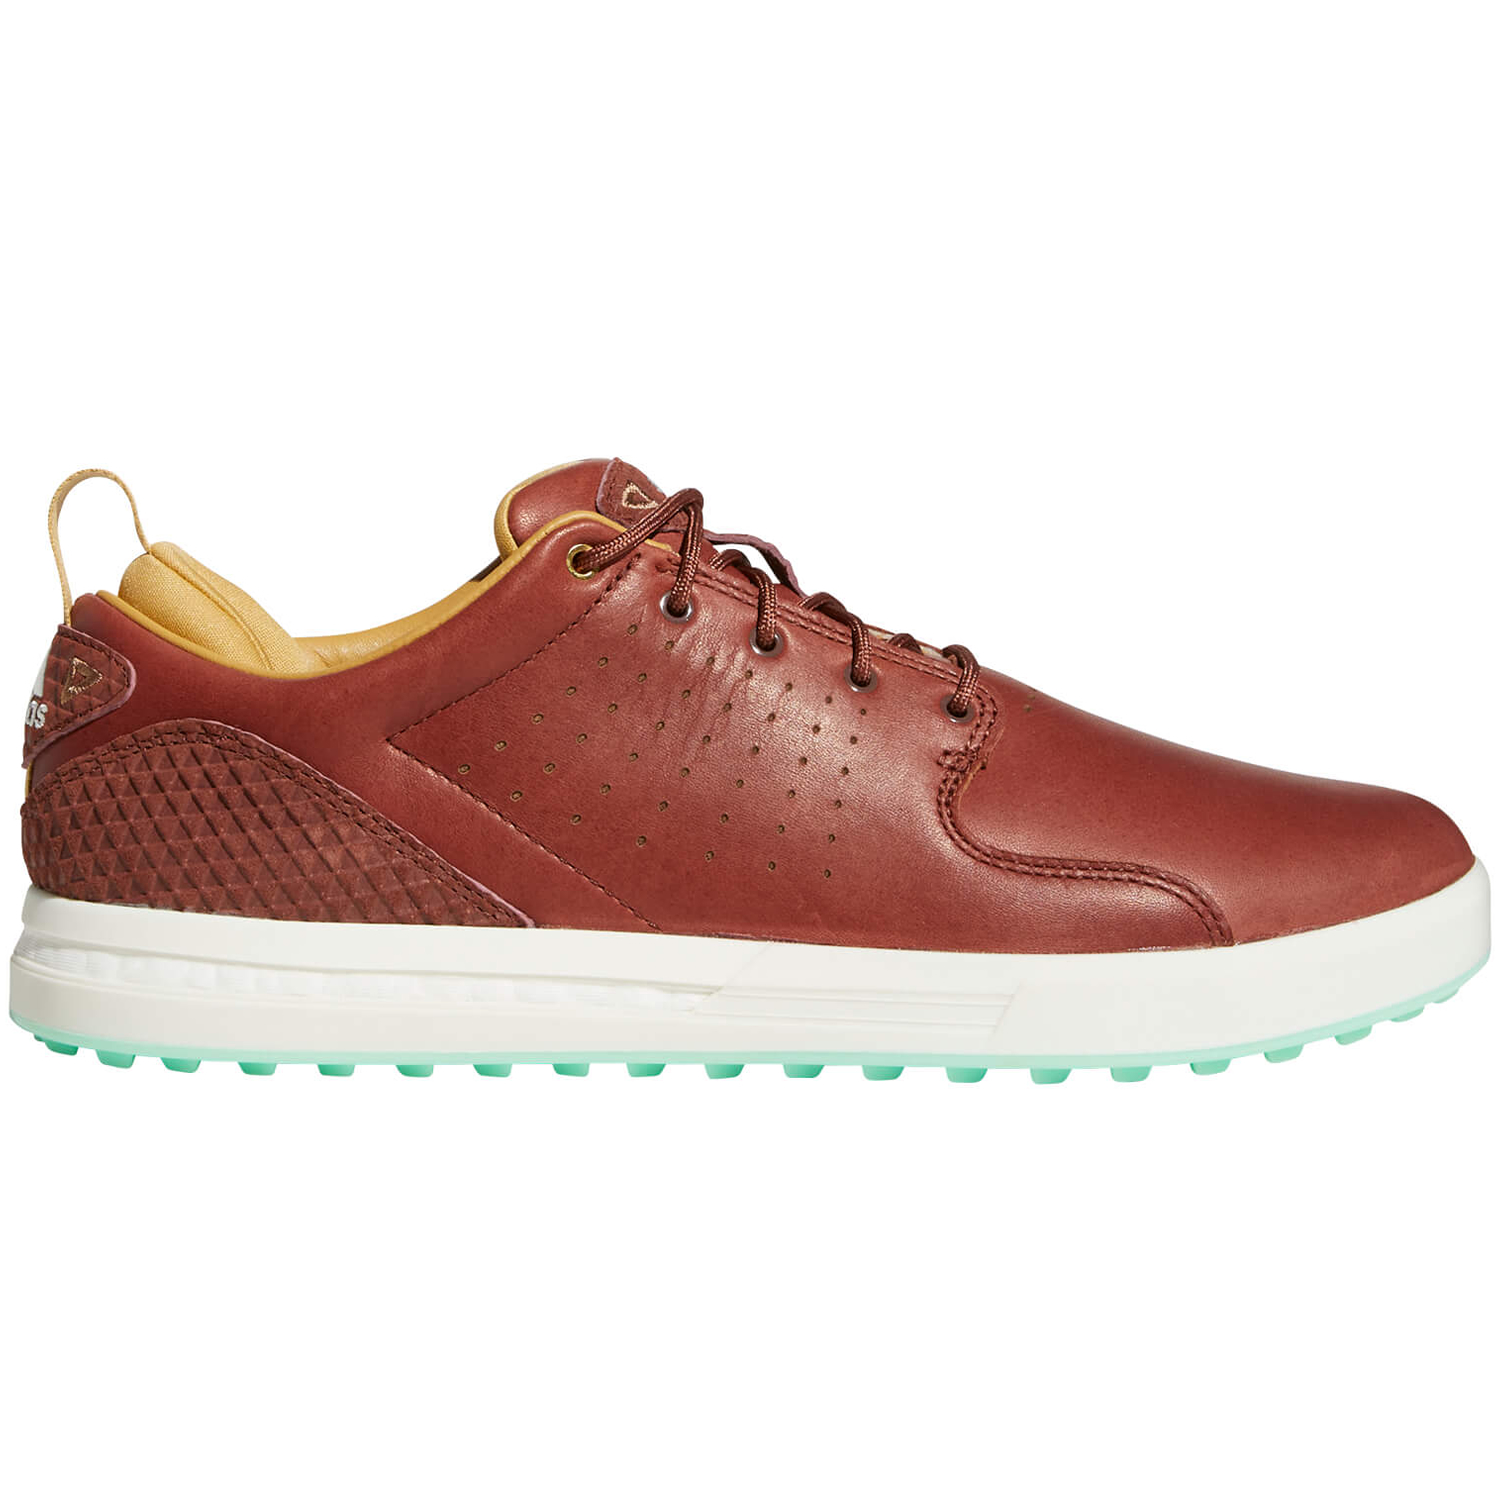 adidas Flopshot Golf Shoes Tan Brown/Golden Beige/Pulse Mint